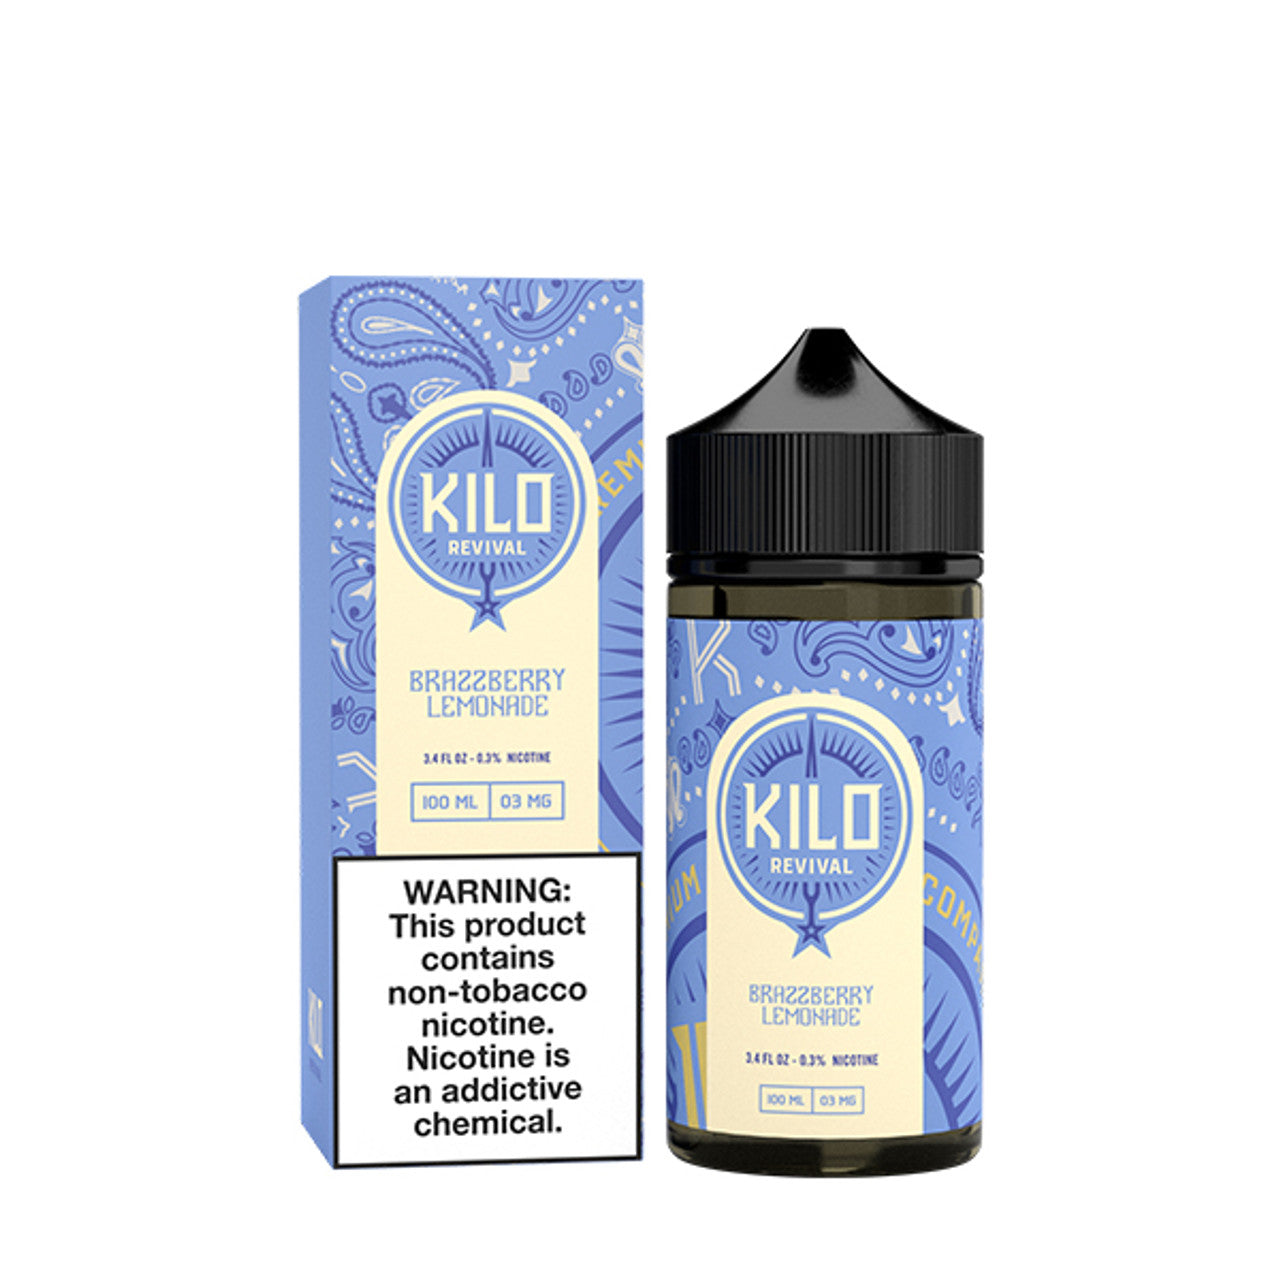 Kilo Revival TFN Series E-Liquid 100mL Brazzberry Lemonade Ice Bottle with Packaging